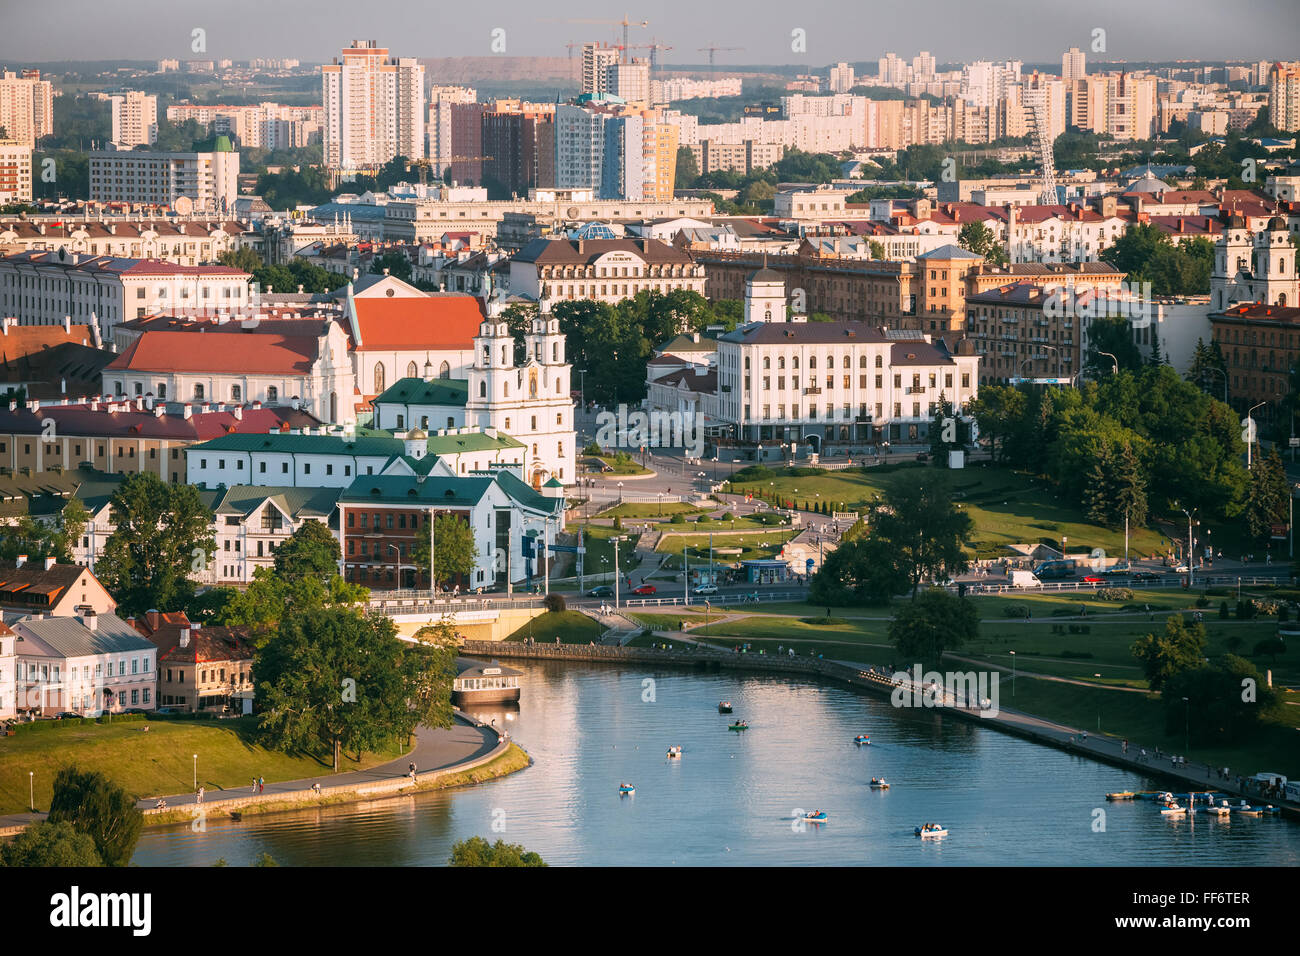 MINSK, Bielorussia - Giugno 2, 2015: Cityscape di Minsk, Bielorussia. Durante la stagione estiva, l'orario del tramonto. Panorama del quartiere Nemiga Foto Stock